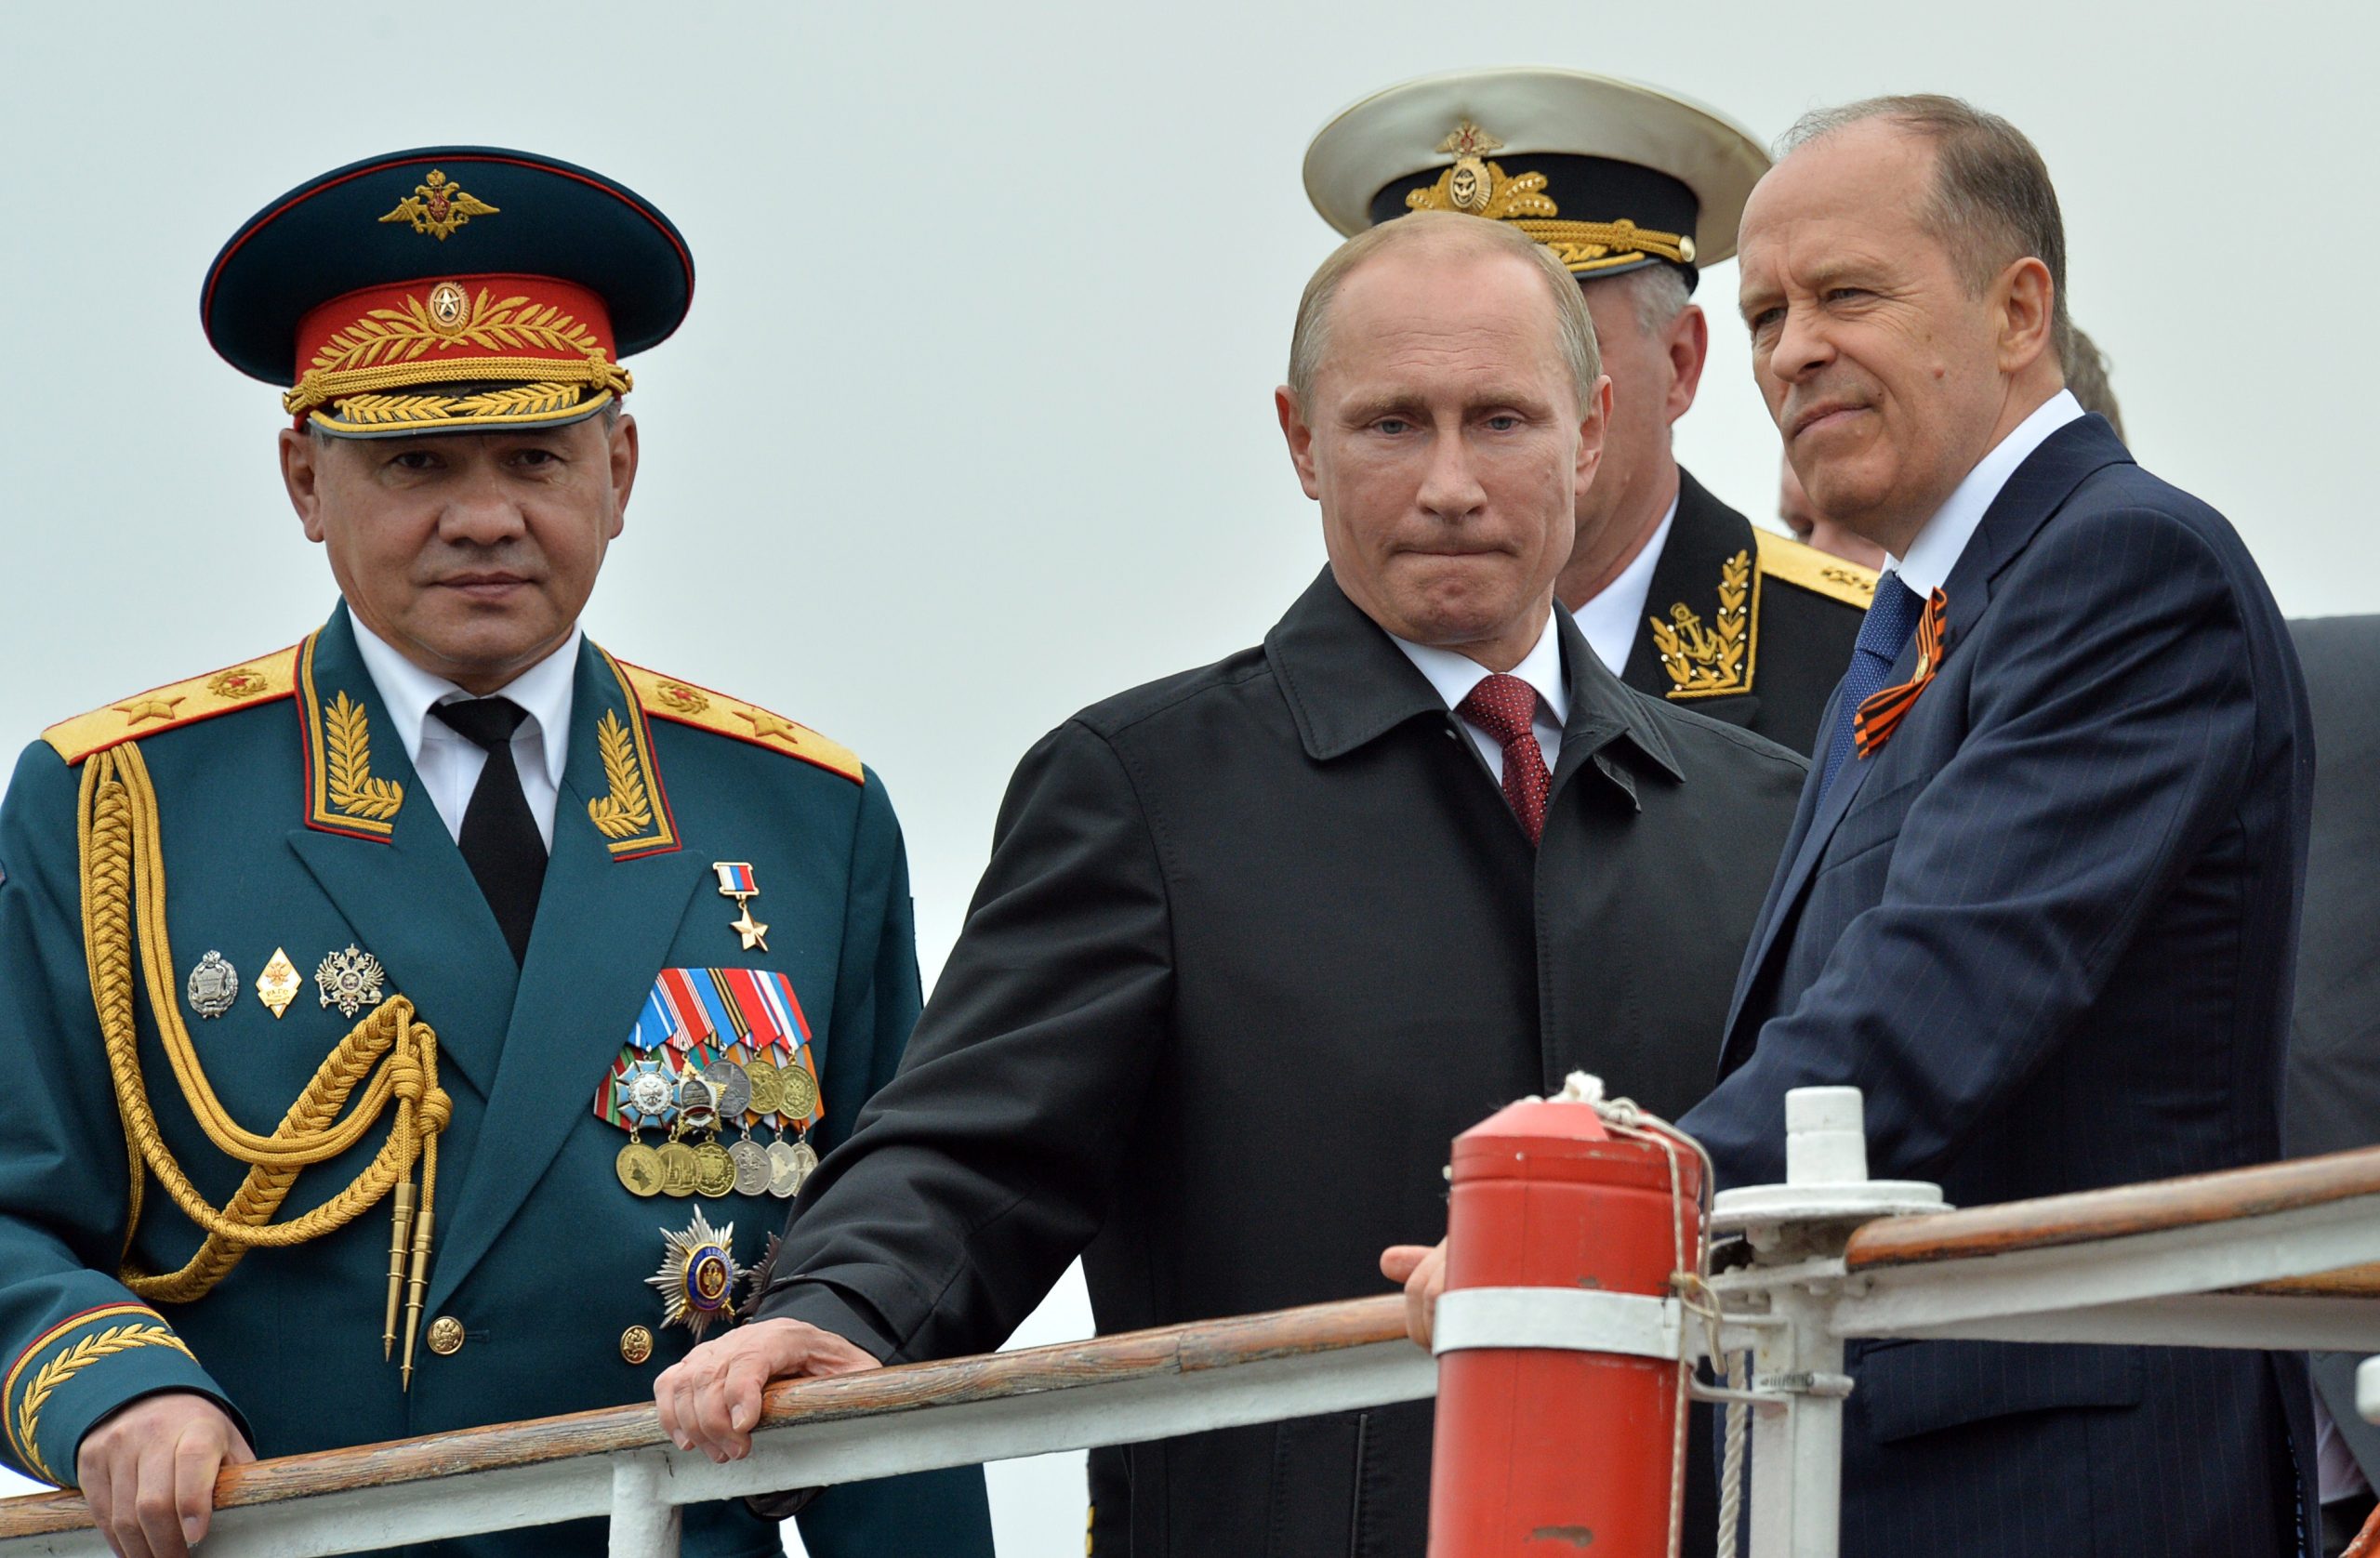 Επίσημο: Ο Βλαντίμιρ Πούτιν θα επισκεφθεί το Ντονμπάς – Το επιβεβαίωσε το Κρεμλίνο